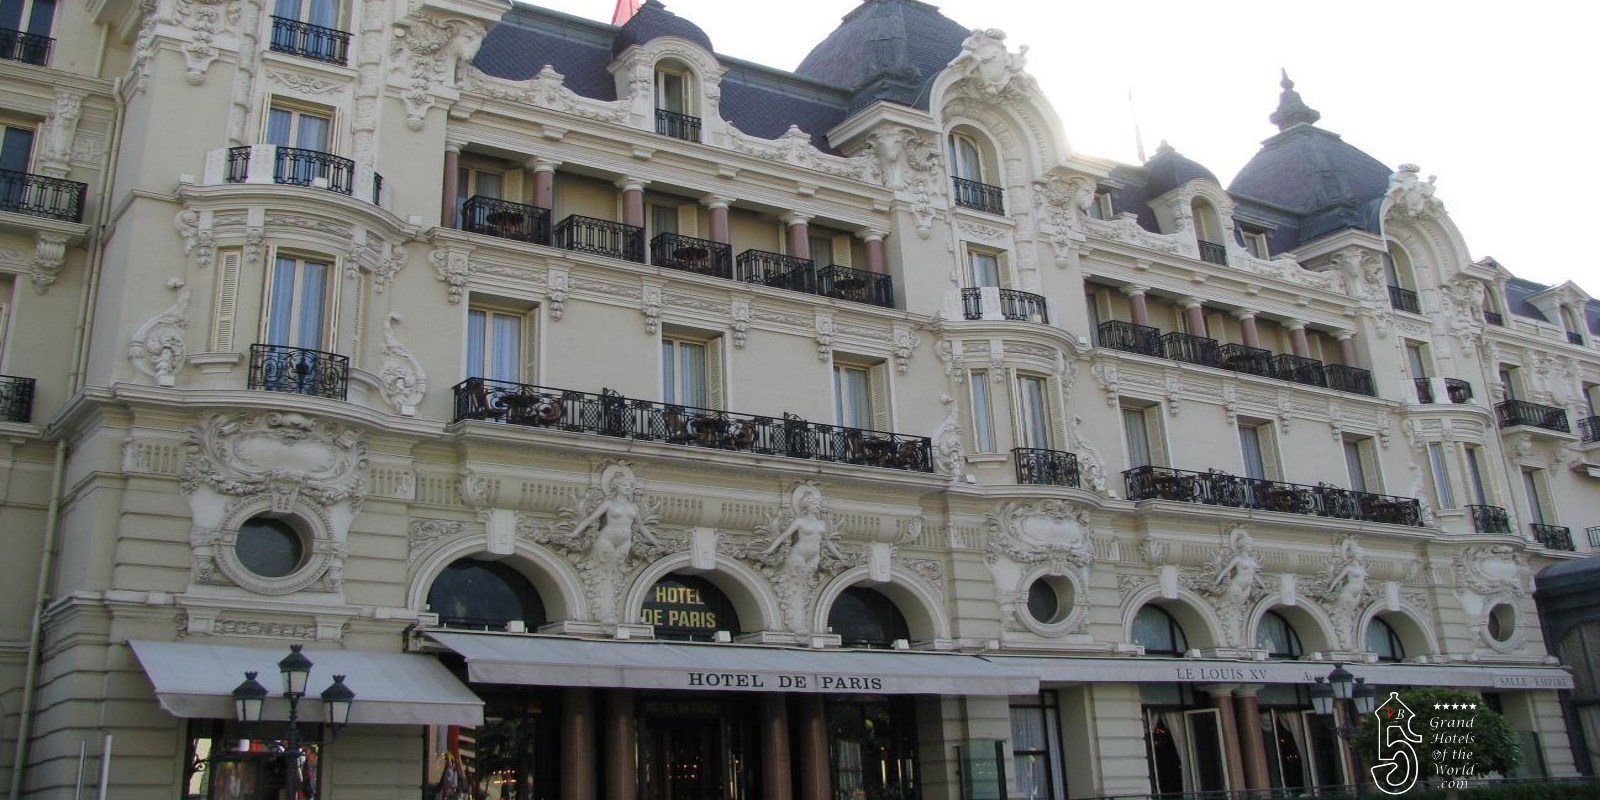 Hotel de Paris in Monaco